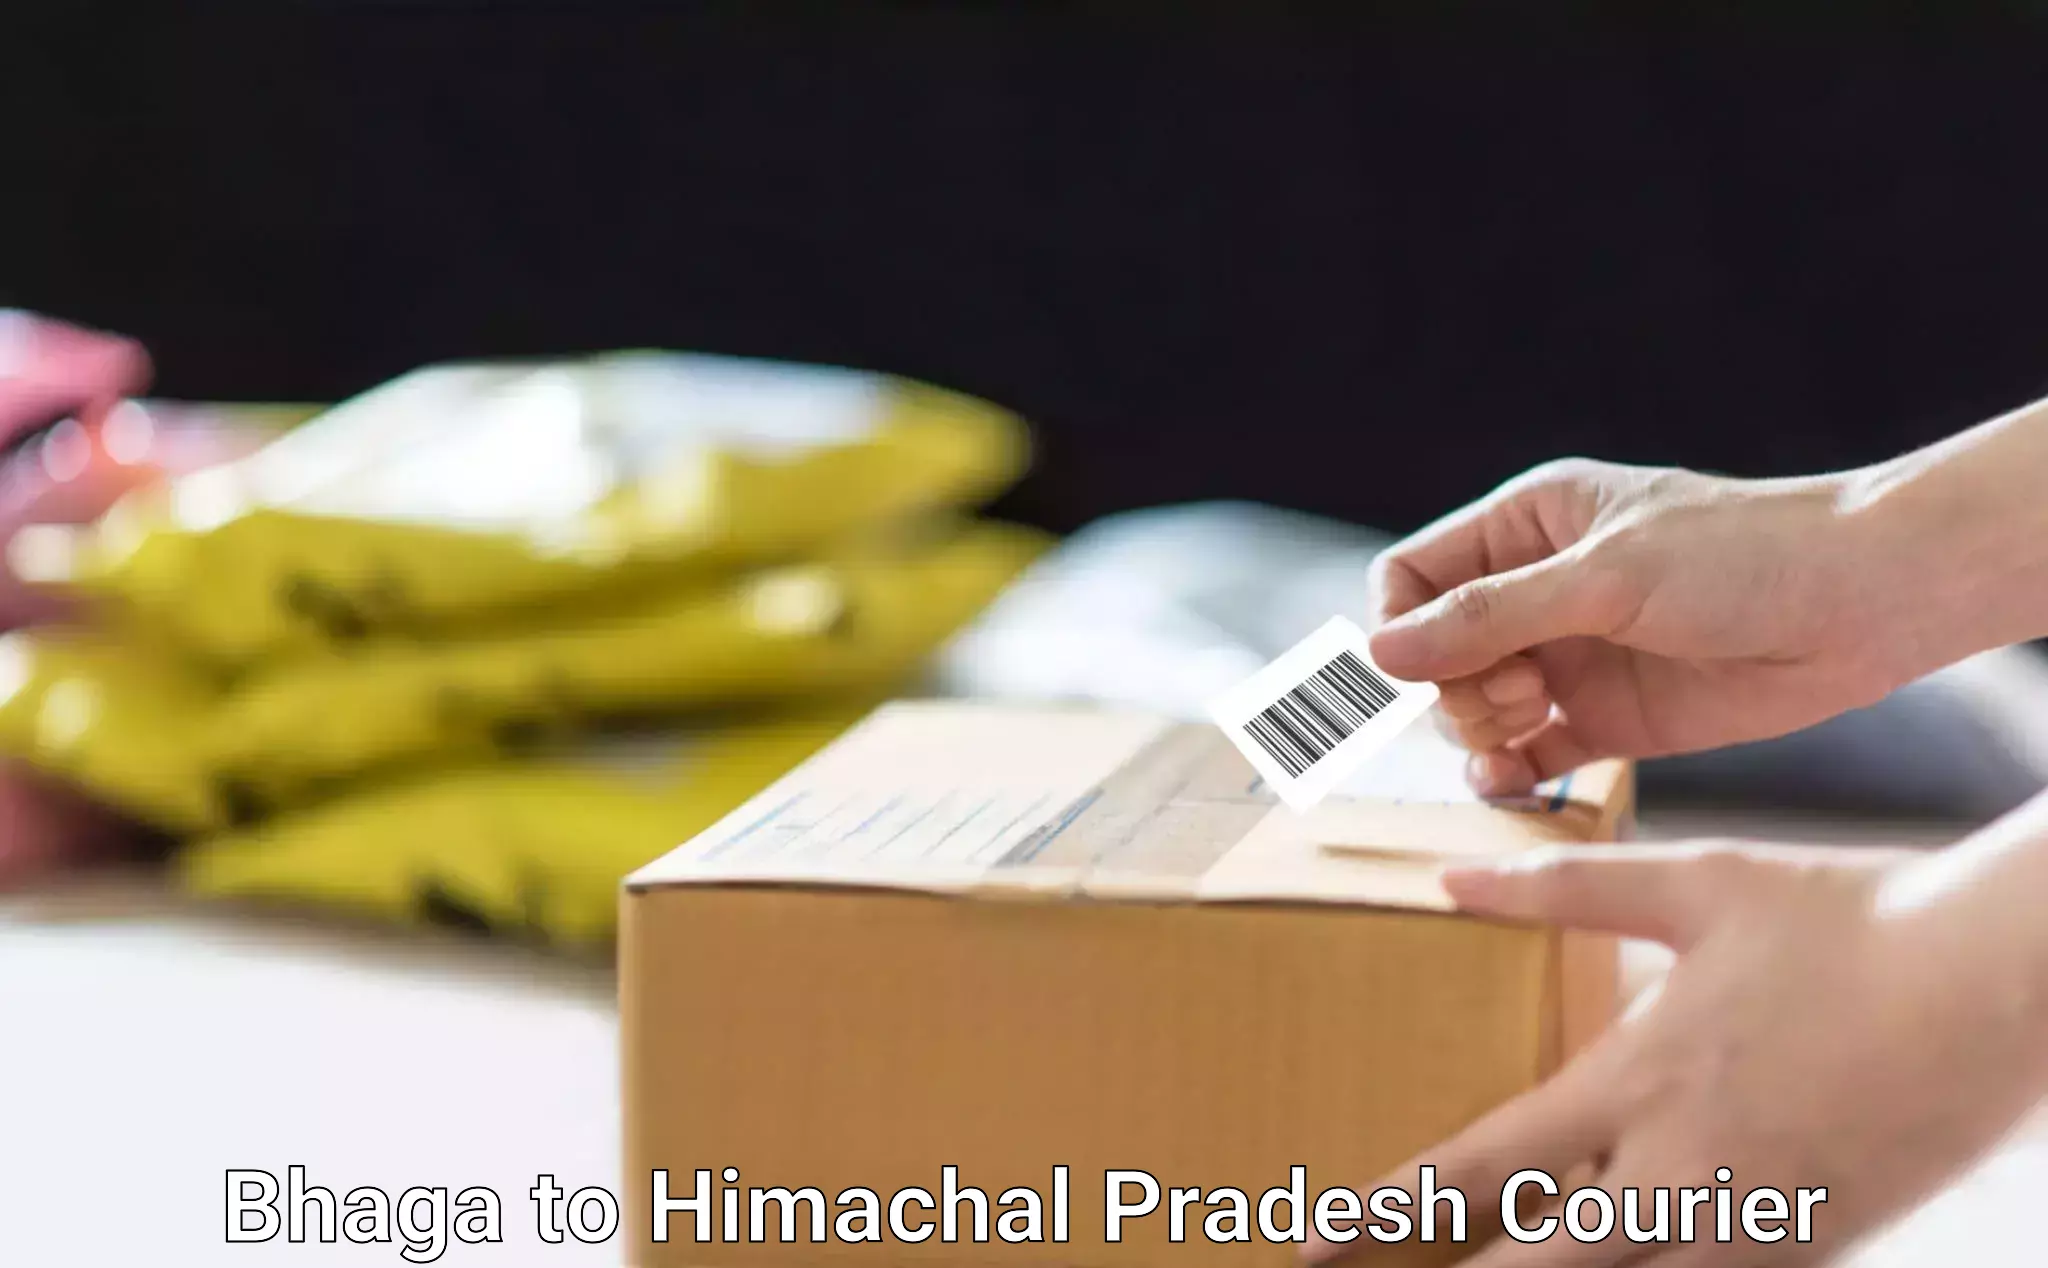 Custom courier packaging Bhaga to Chowari